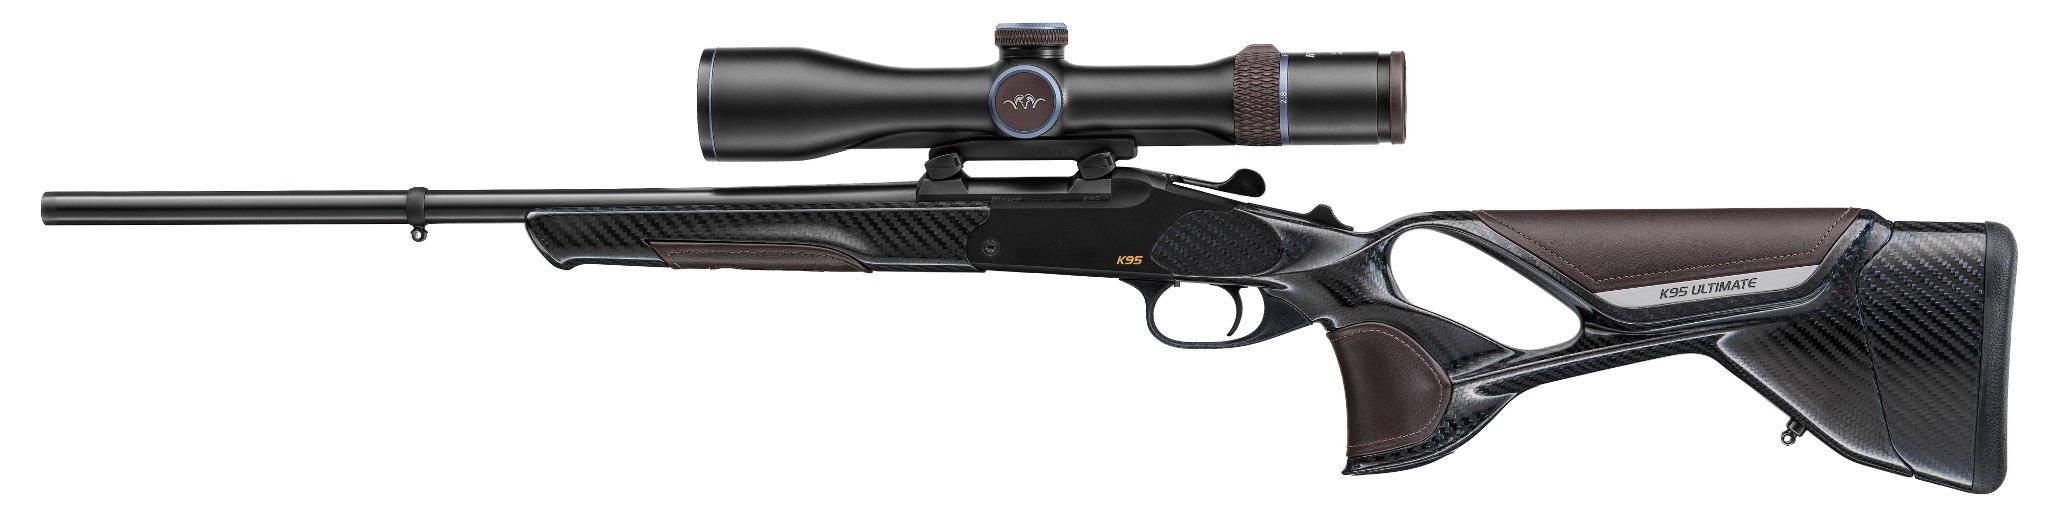 Blaser K95 single shot sporting rifle